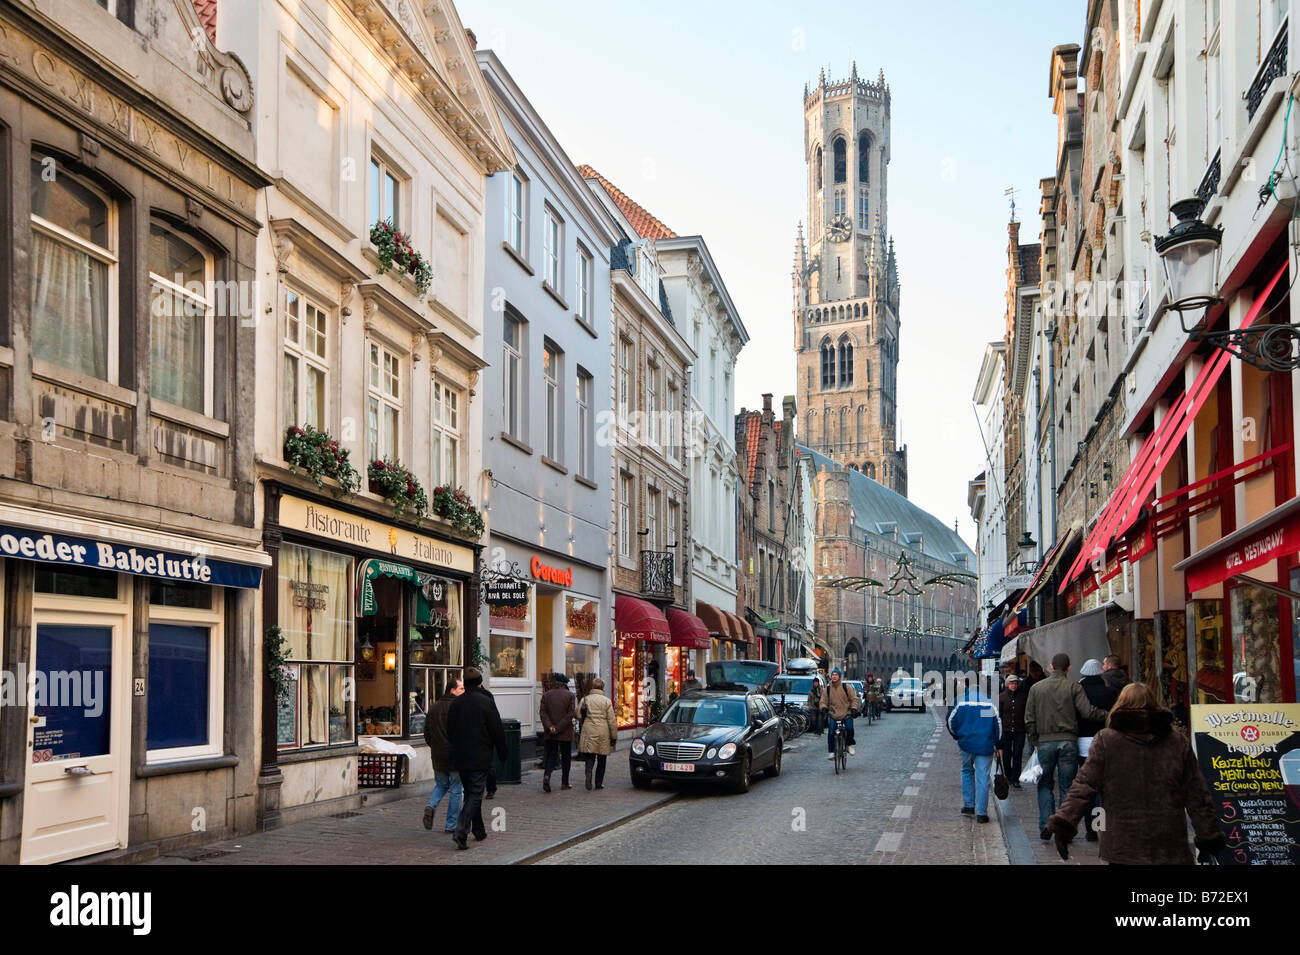 Rue commerçante dans le centre de la vieille ville à l'époque de Noël avec la tour du beffroi derrière, Bruges, Belgique Banque D'Images